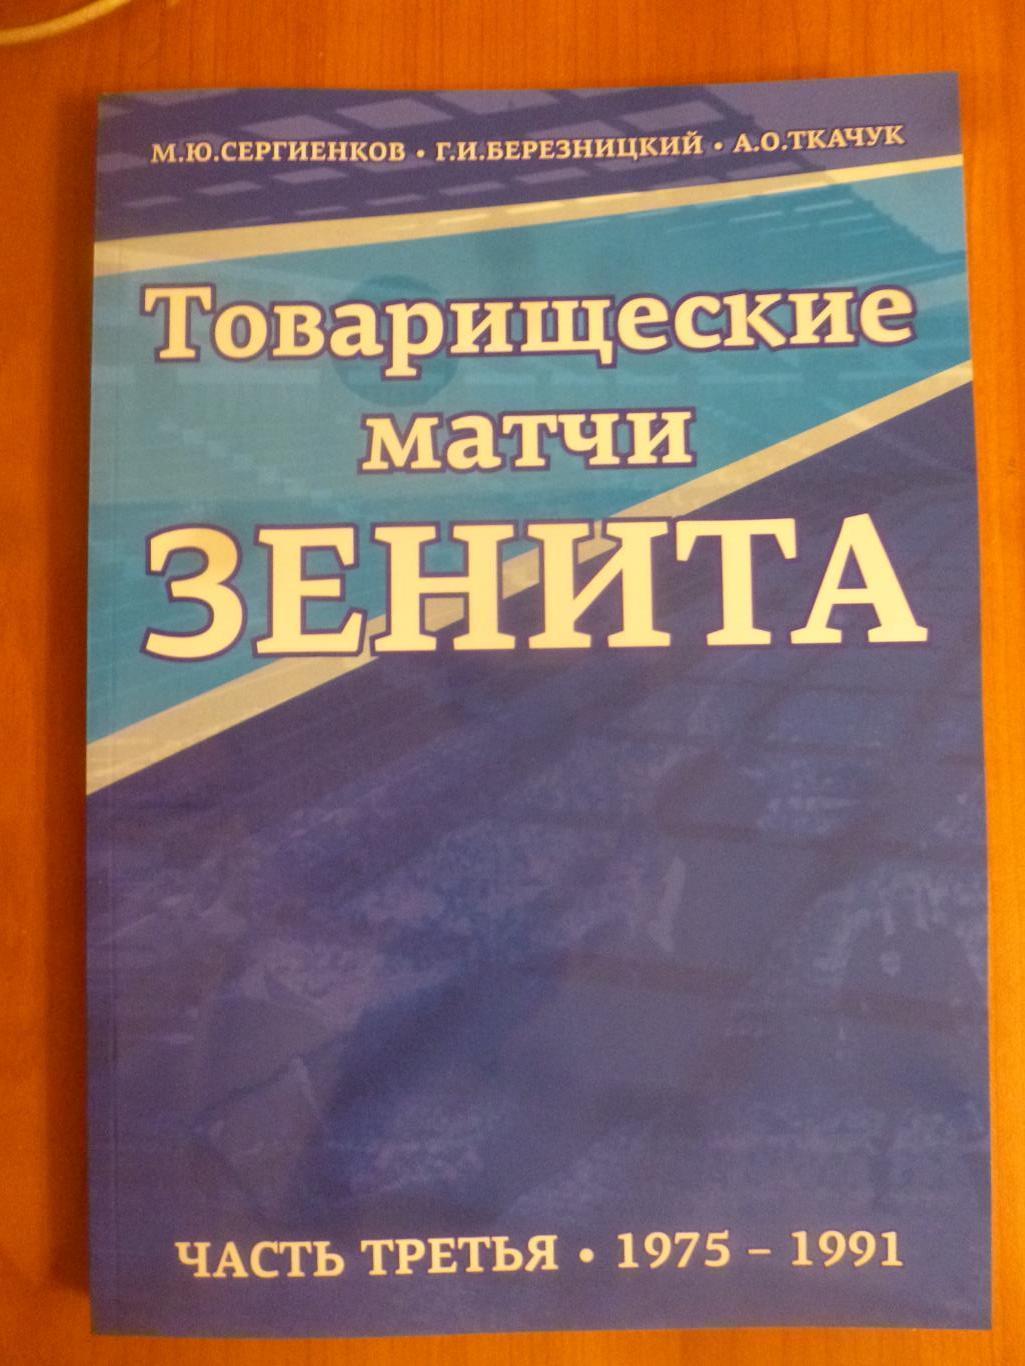 Книга Товарищеские матчи Зенита. Часть 3 (1975-1991). Новинка!!!*